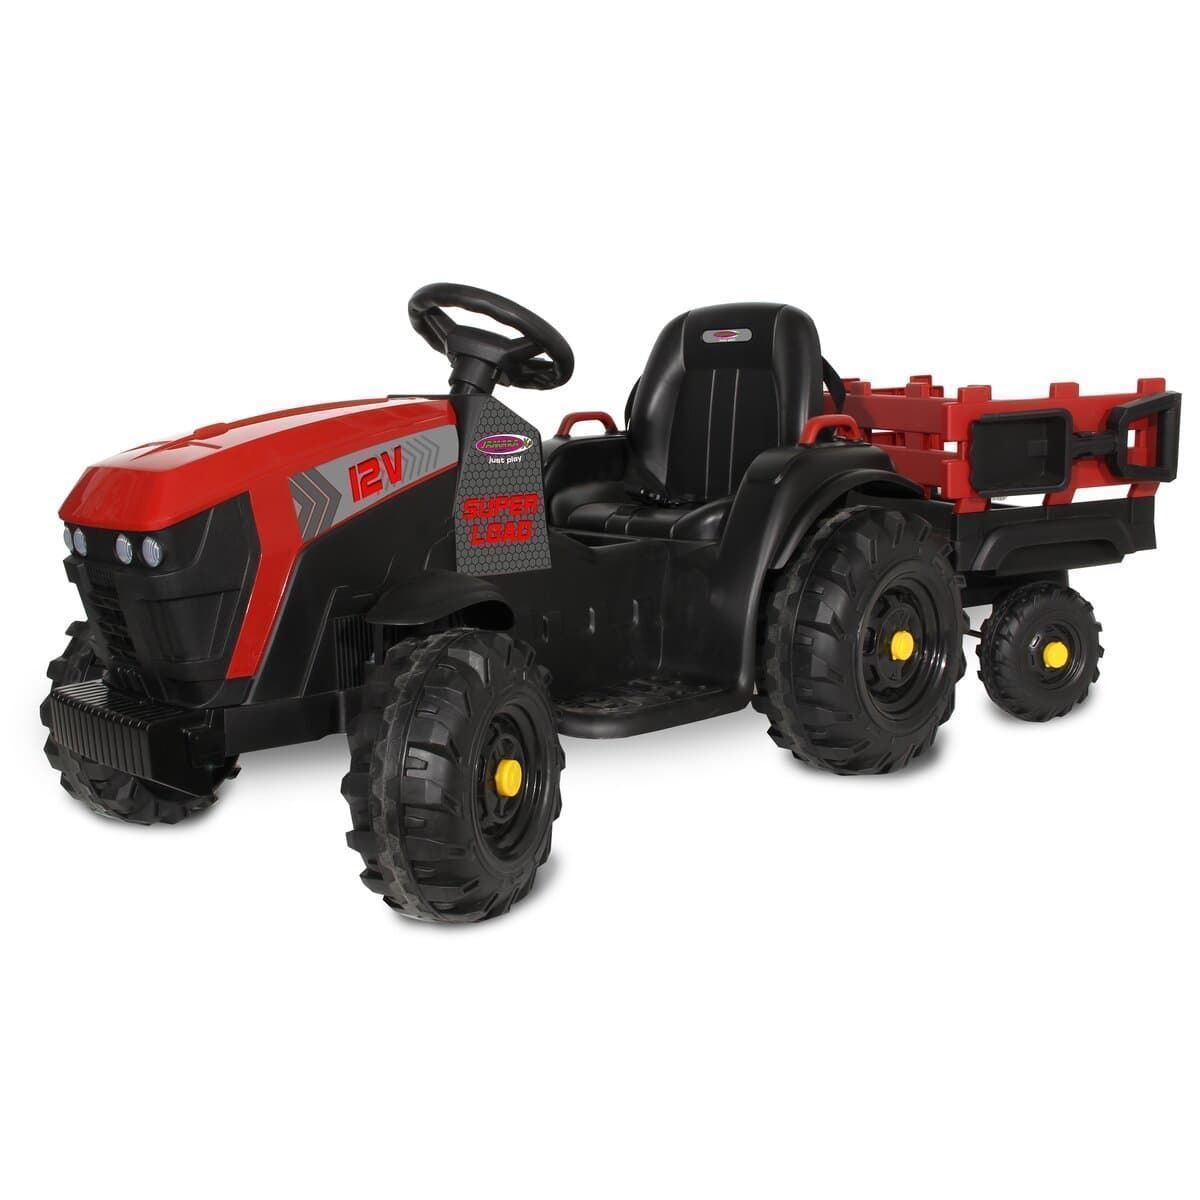 Tractor de batería 12v con remolque rojo jamara 460895 - Imagen 1